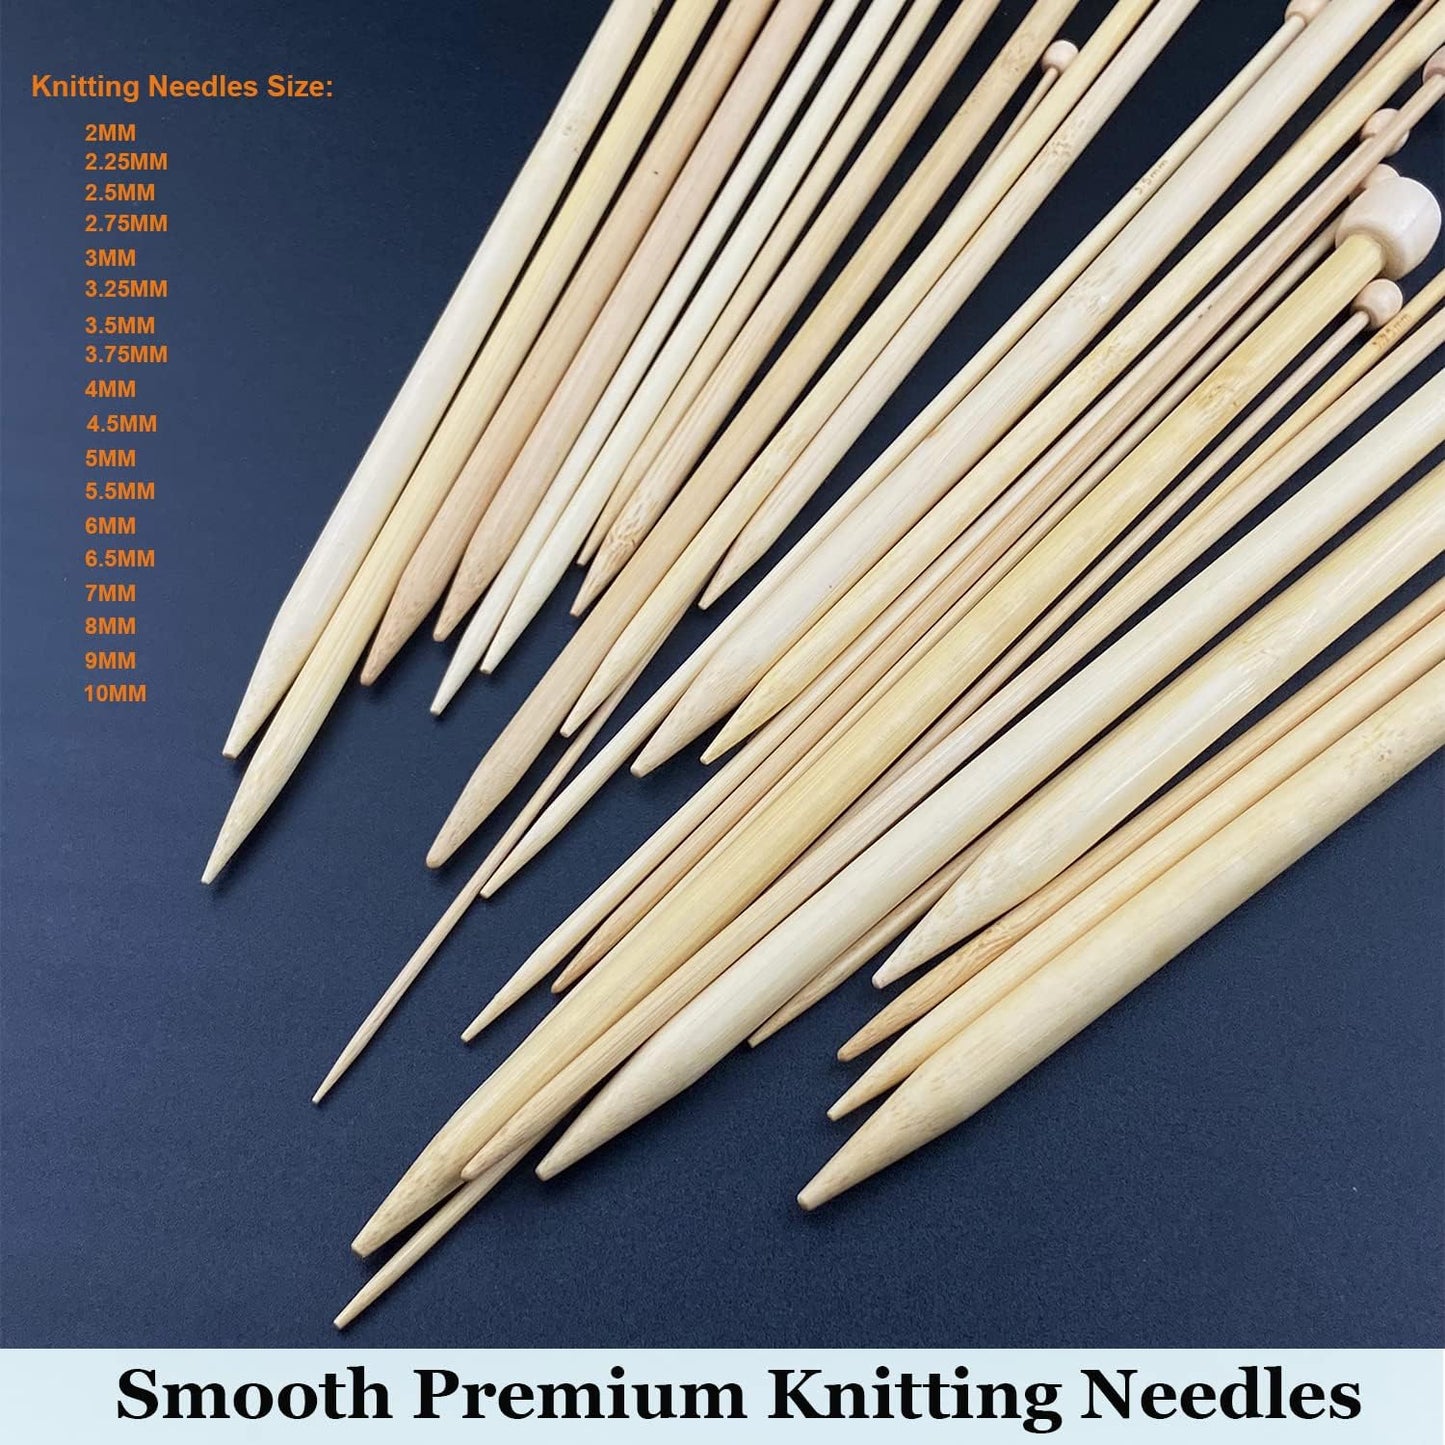 95Pcs Knitting Needles Kit&Crochet Hooks Set 36 Straight Bamboo Knitting Needle 12 Small Size Lace Crochet Hook 5 Ergonomic Crochet Needles Knitting Set with Knitting Supplies&Accessories